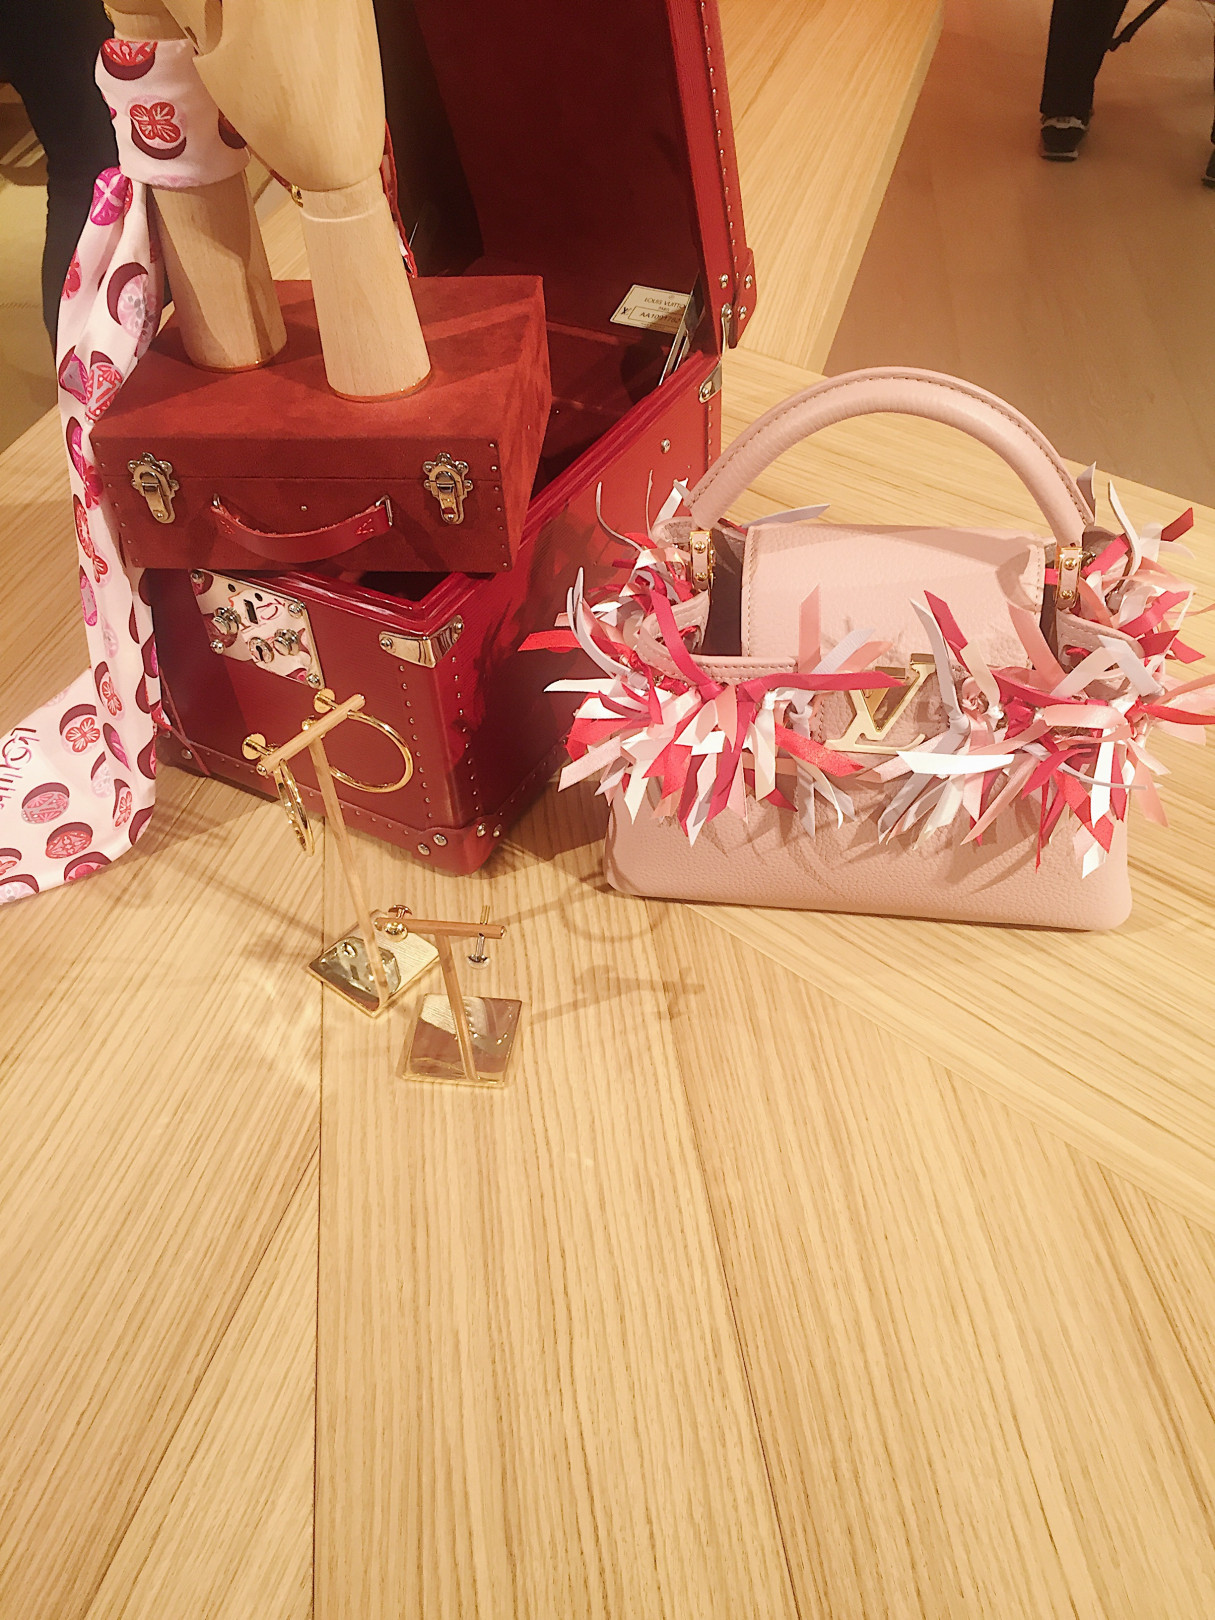 日本のおみくじから着想を得た「カプシーヌ」シリーズの限定バッグ